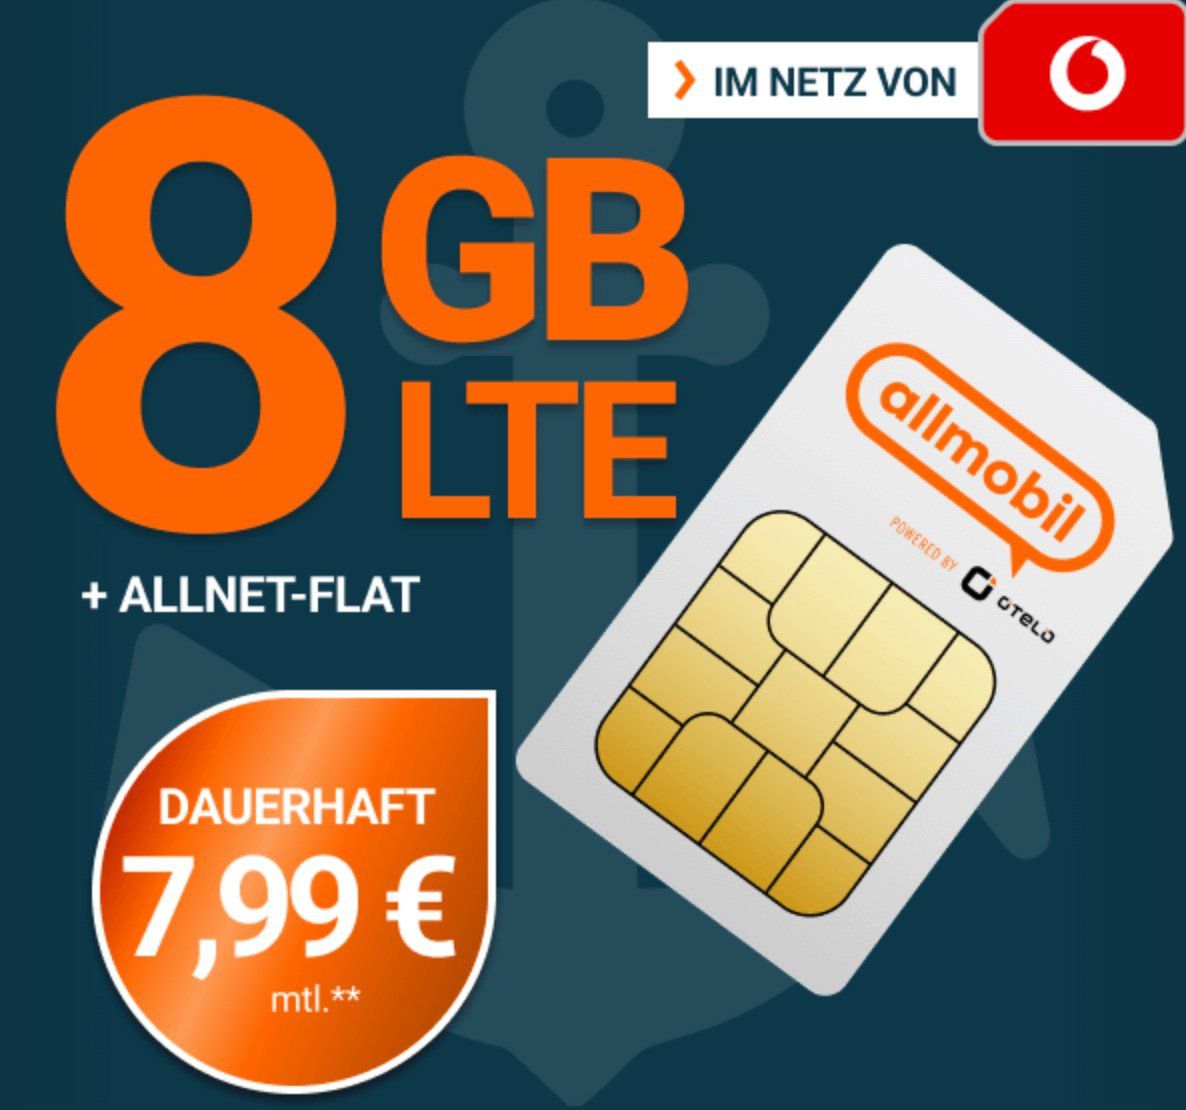 Vodafone Allnet Flat 8GB LTE für 7,99€ mtl. oder 10GB für 11,99€ mtl. + 50€ Bonus